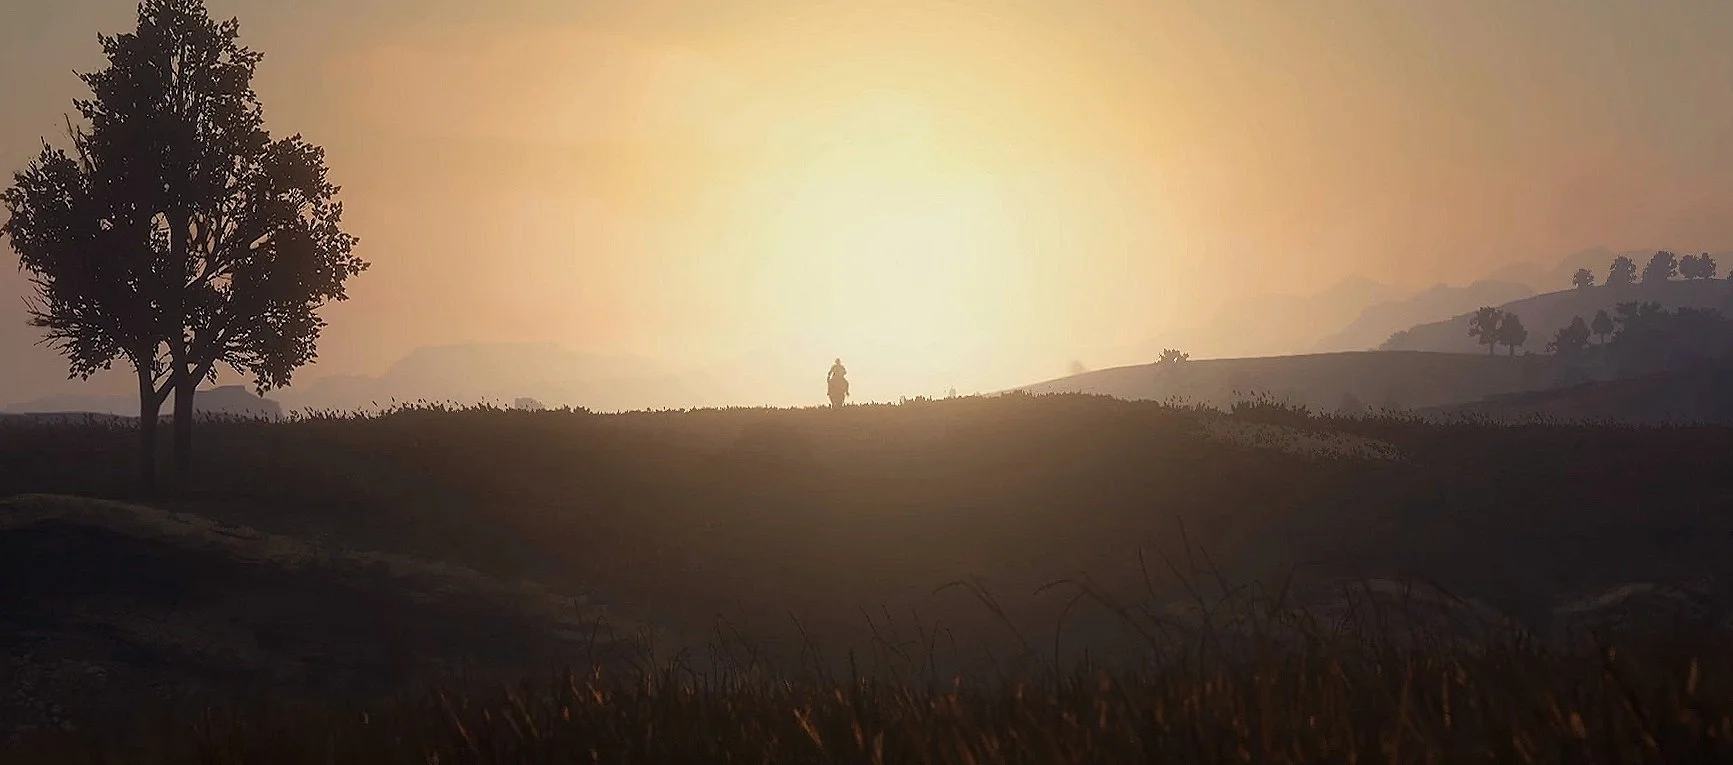 Короткий трейлер Red Dead Redemption 2 впечатляет и завораживает природными красотами Дикого Запада. Так что мы не удержались и разобрали его на гифки.